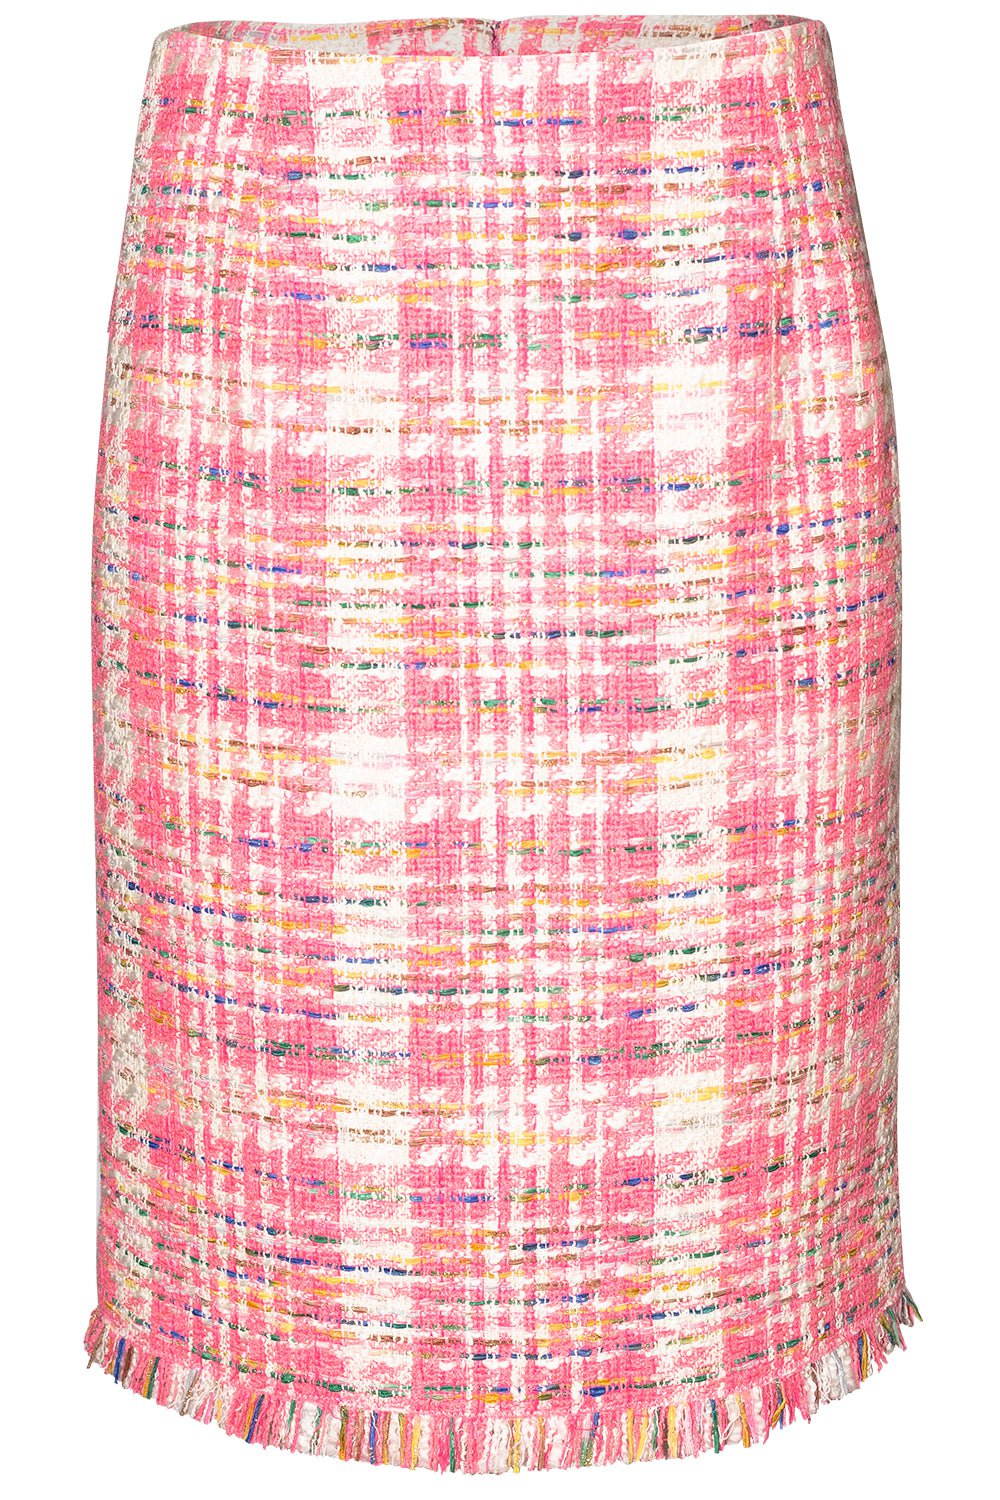 OSCAR DE LA RENTA-Tweed Pencil Skirt-